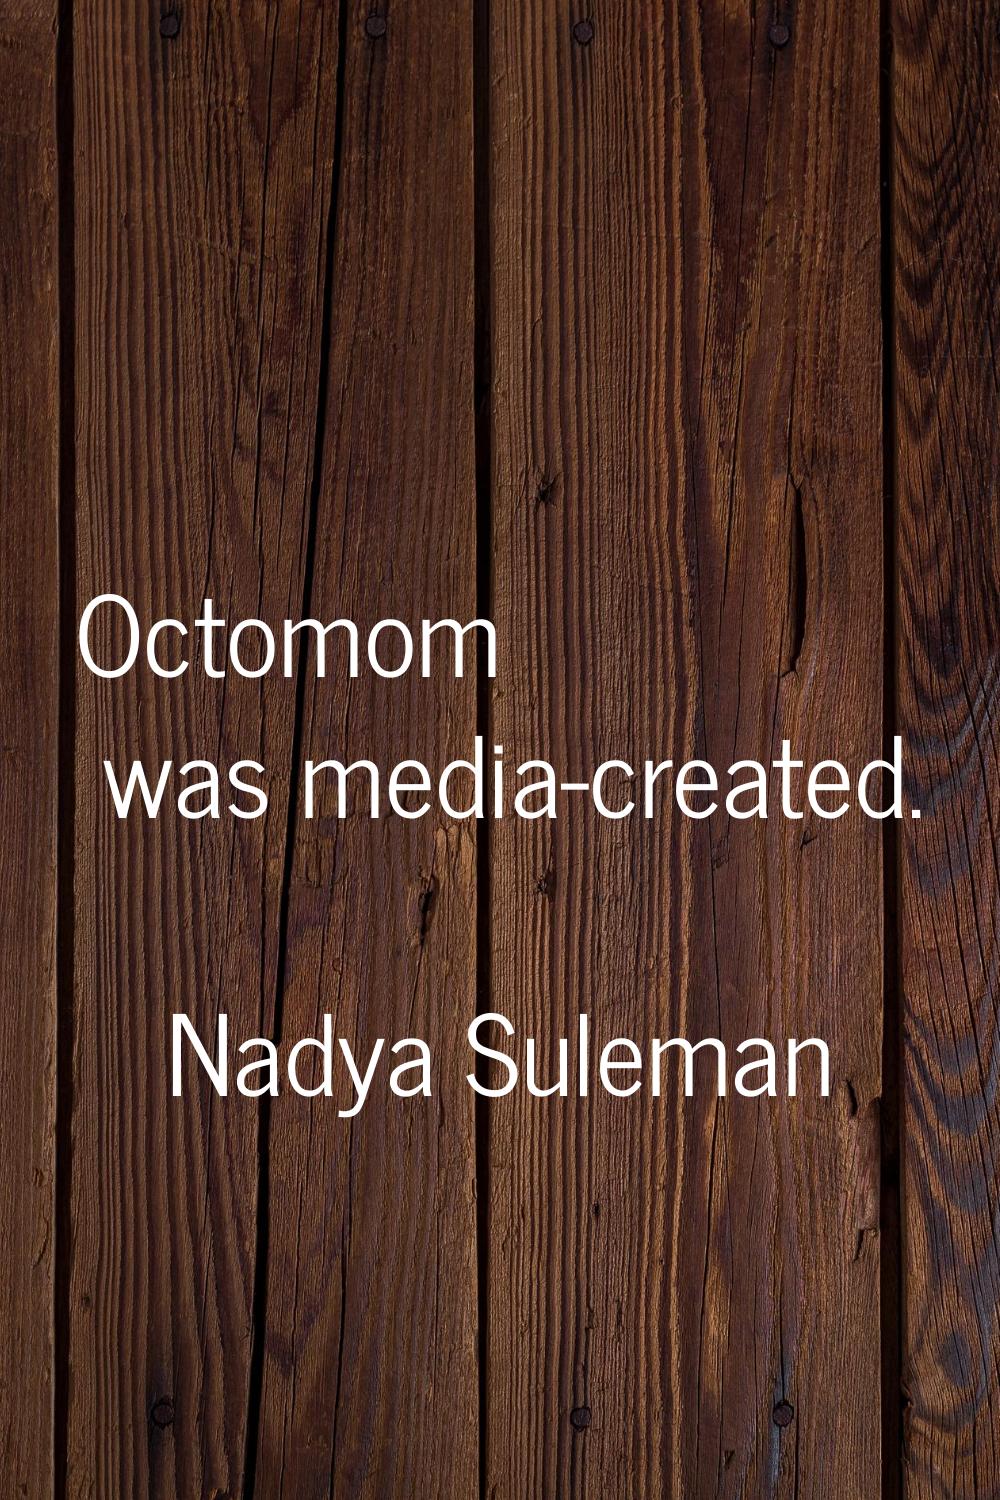 Octomom was media-created.